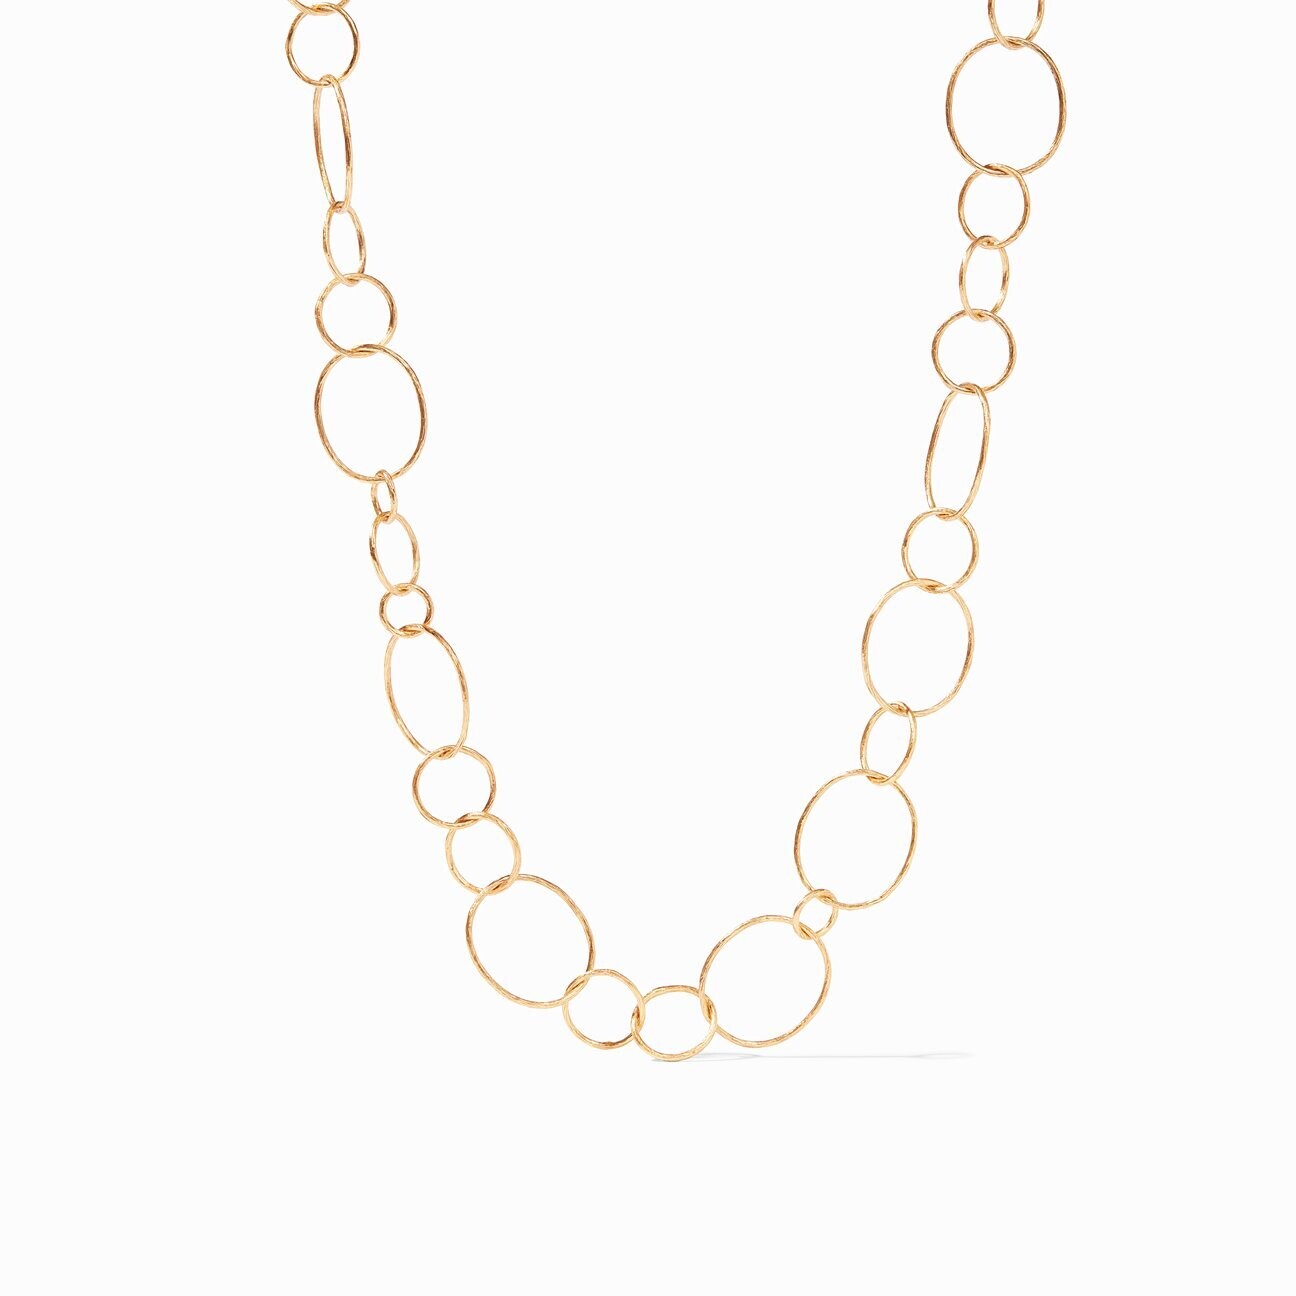 JULIE VOS Colette Textured Necklace Gold - N014